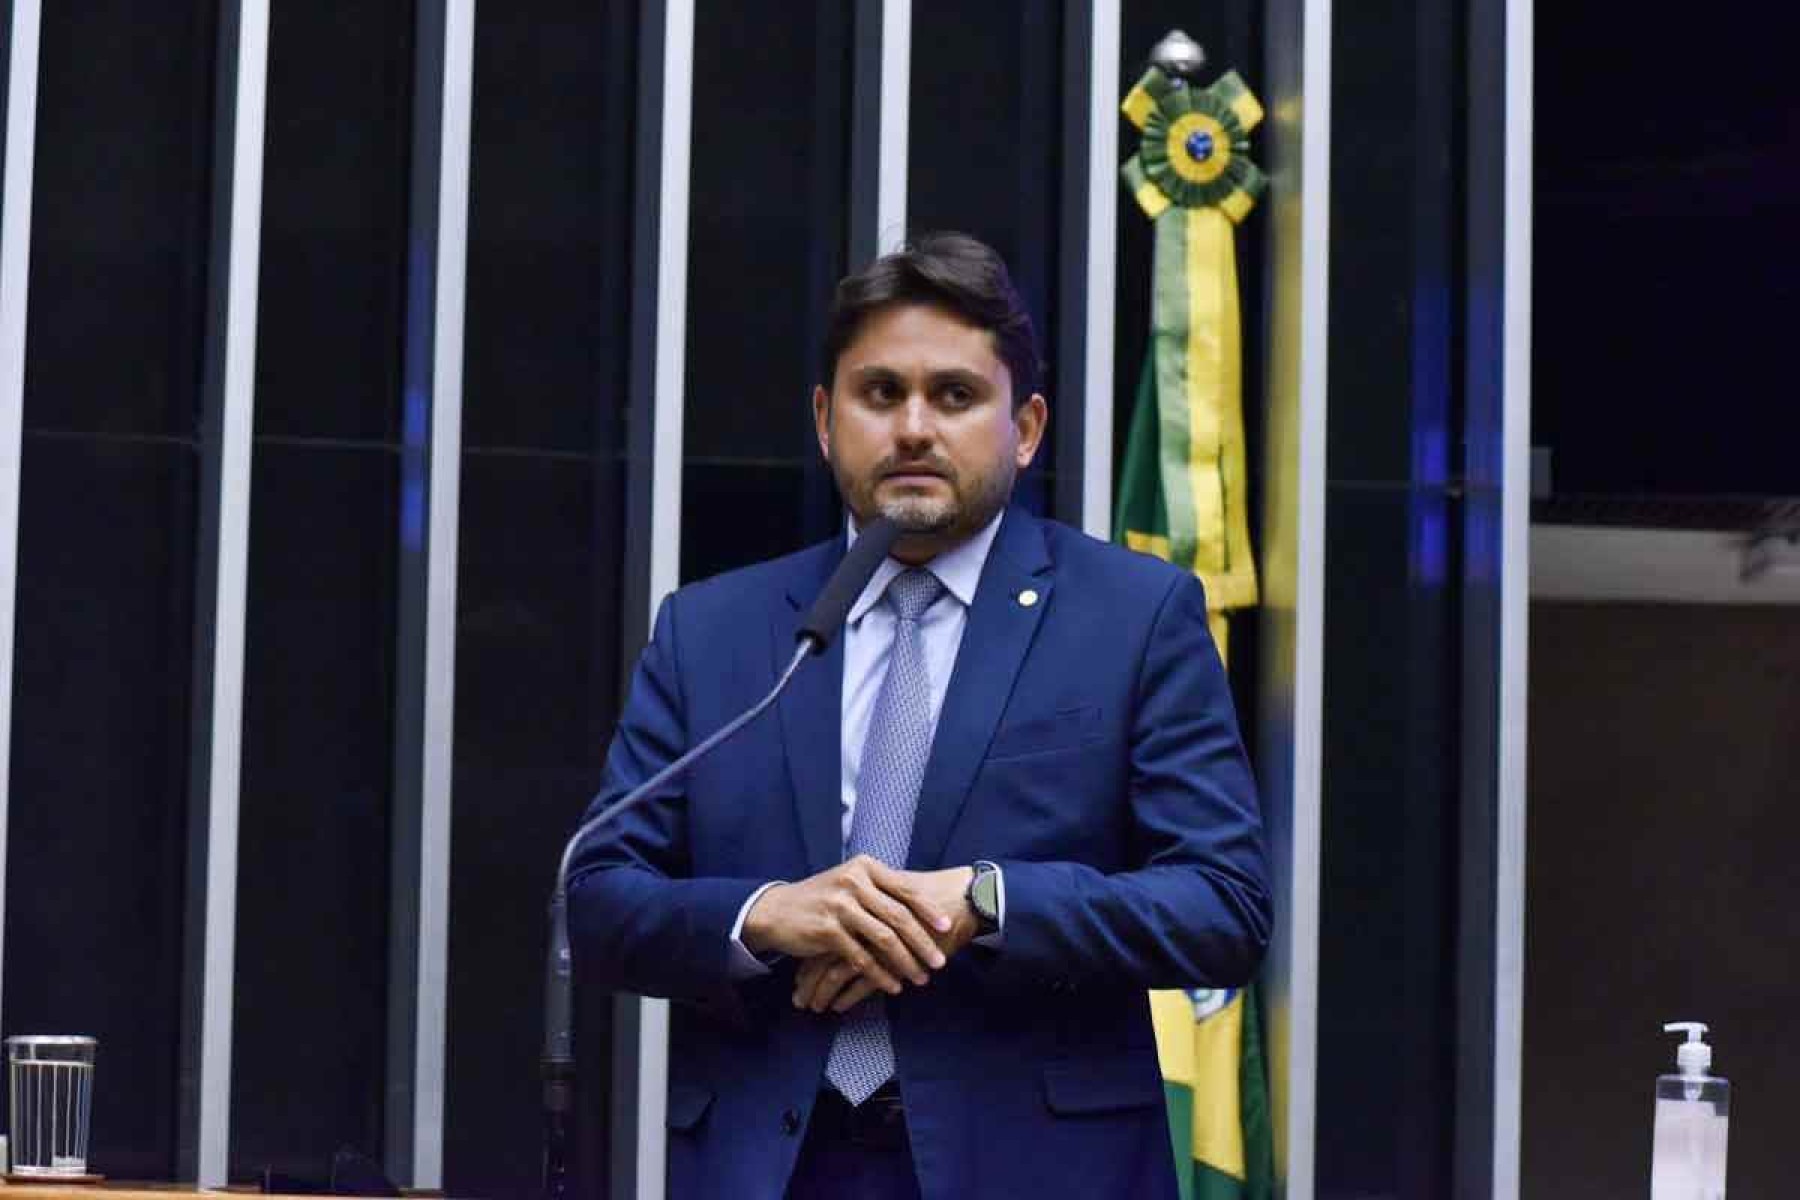 Indiciamento do ministro Juscelino Filho desgasta mais o Planalto